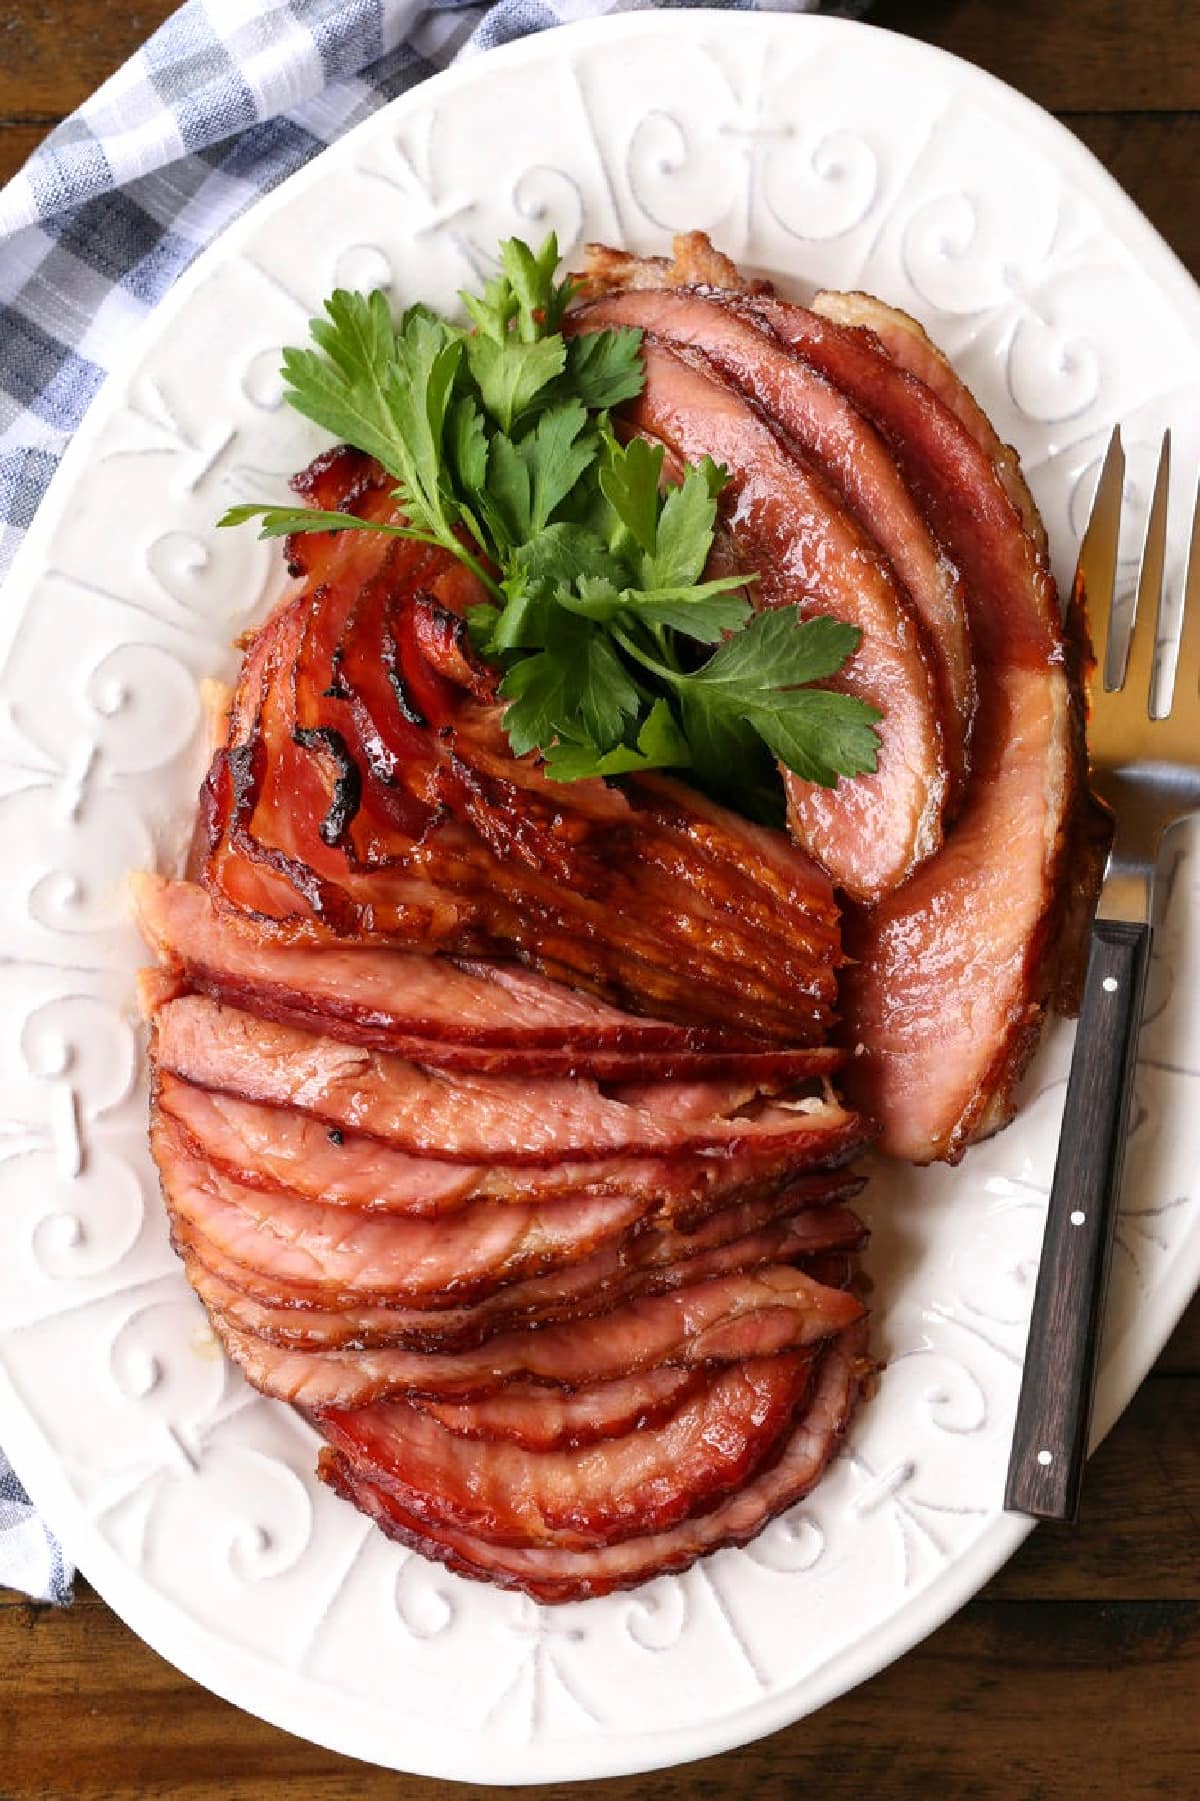 slices of ham on platter with serving fork